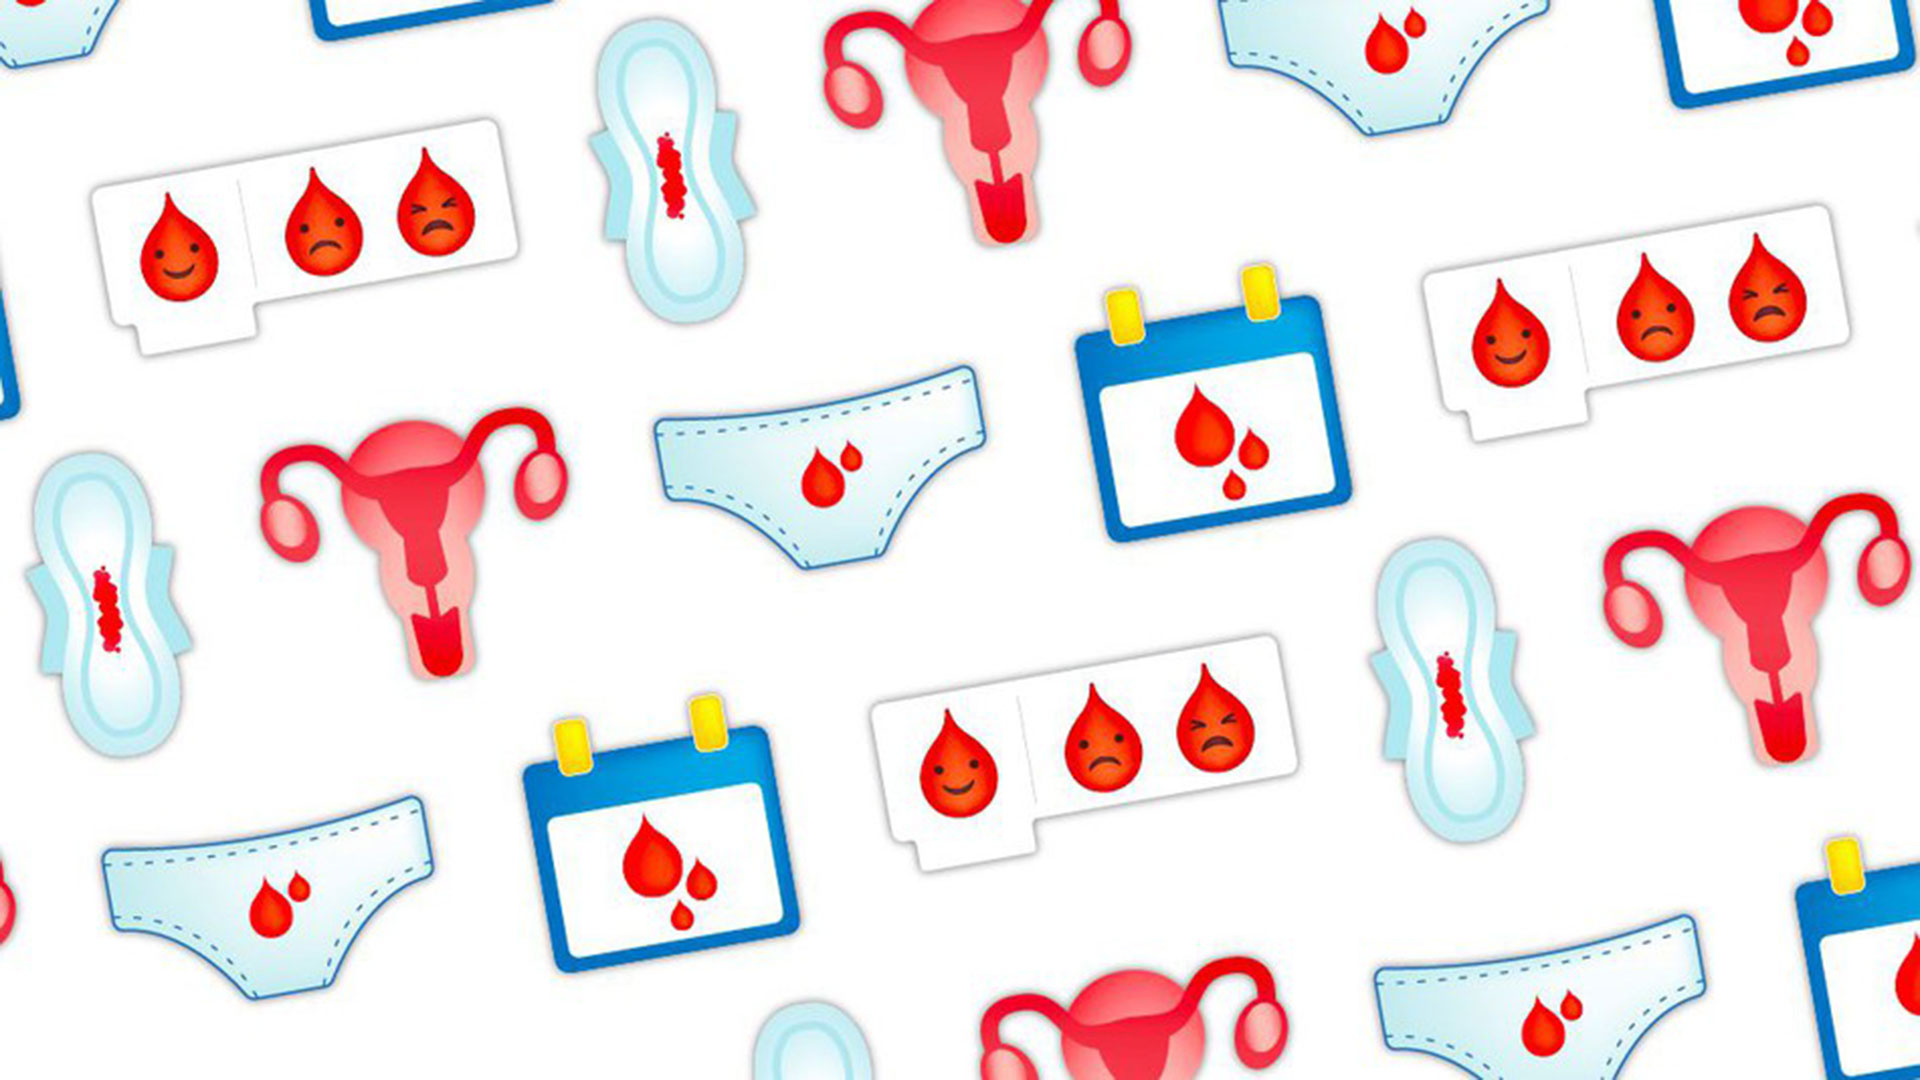 Lanzan una campaña en las redes sociales para incluir un emoji de la menstruación